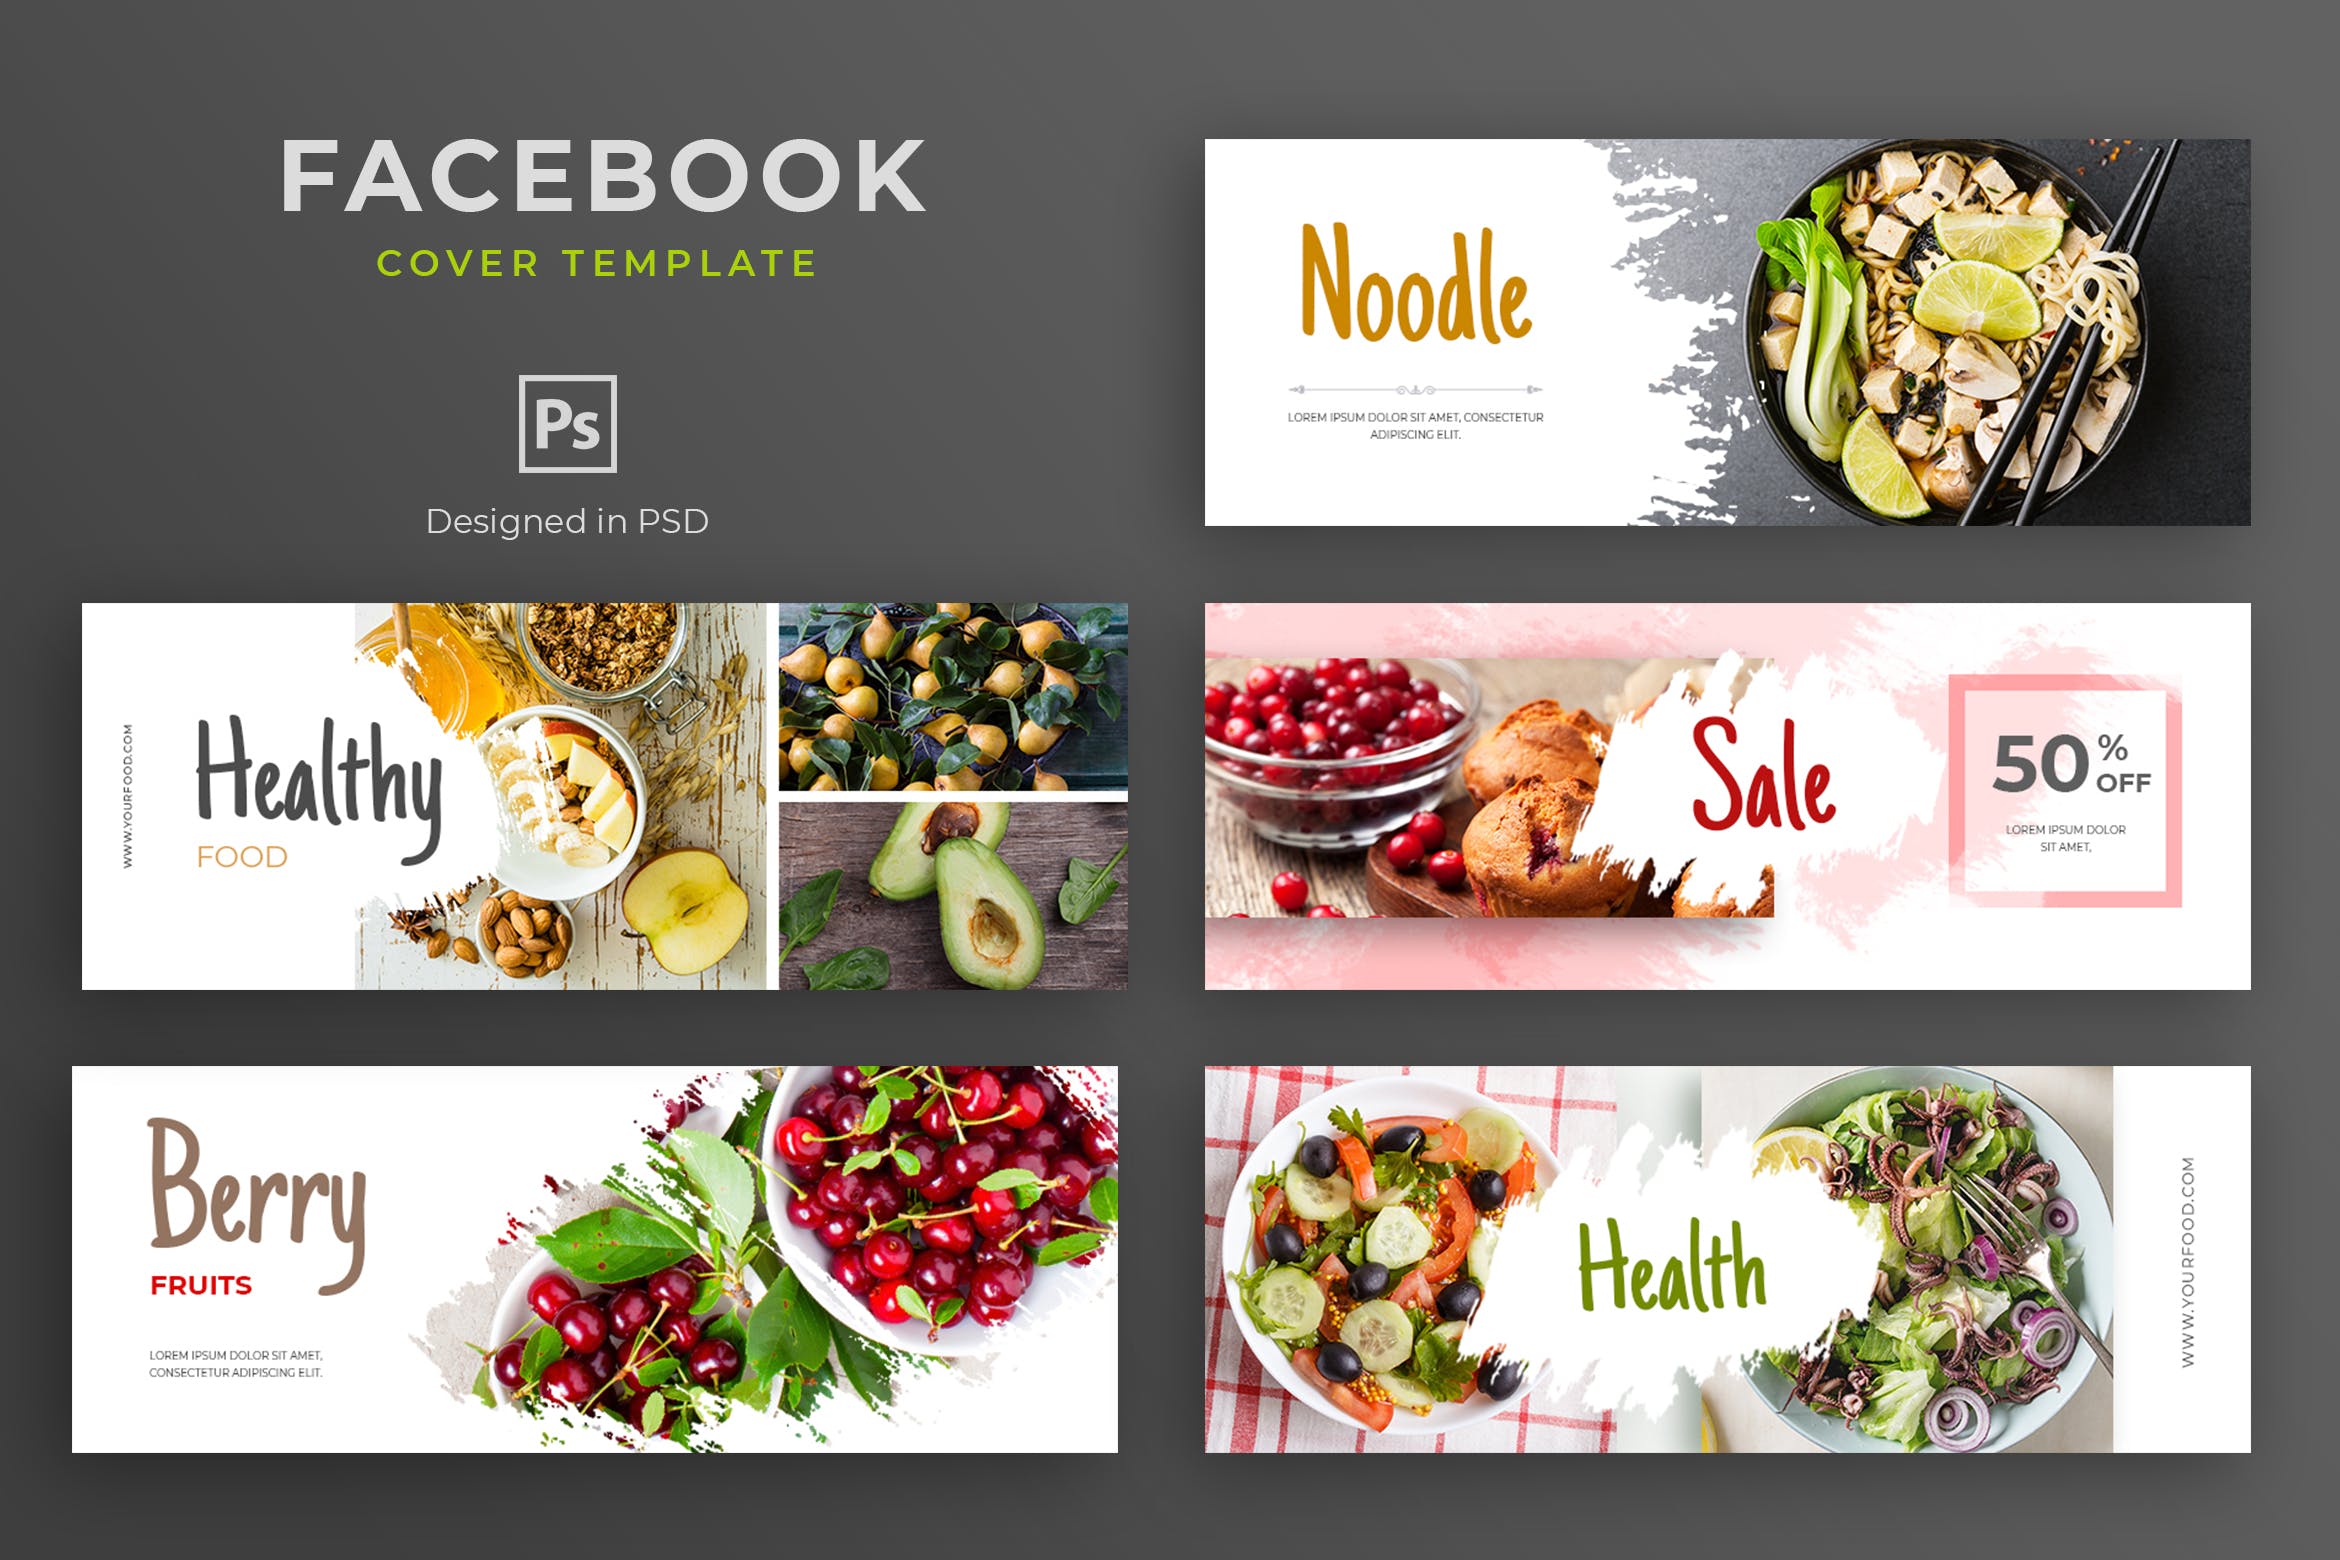 健康食物品牌推广Facebook主页封面设计模板蚂蚁素材精选 Healthy Food Facebook Cover Template插图